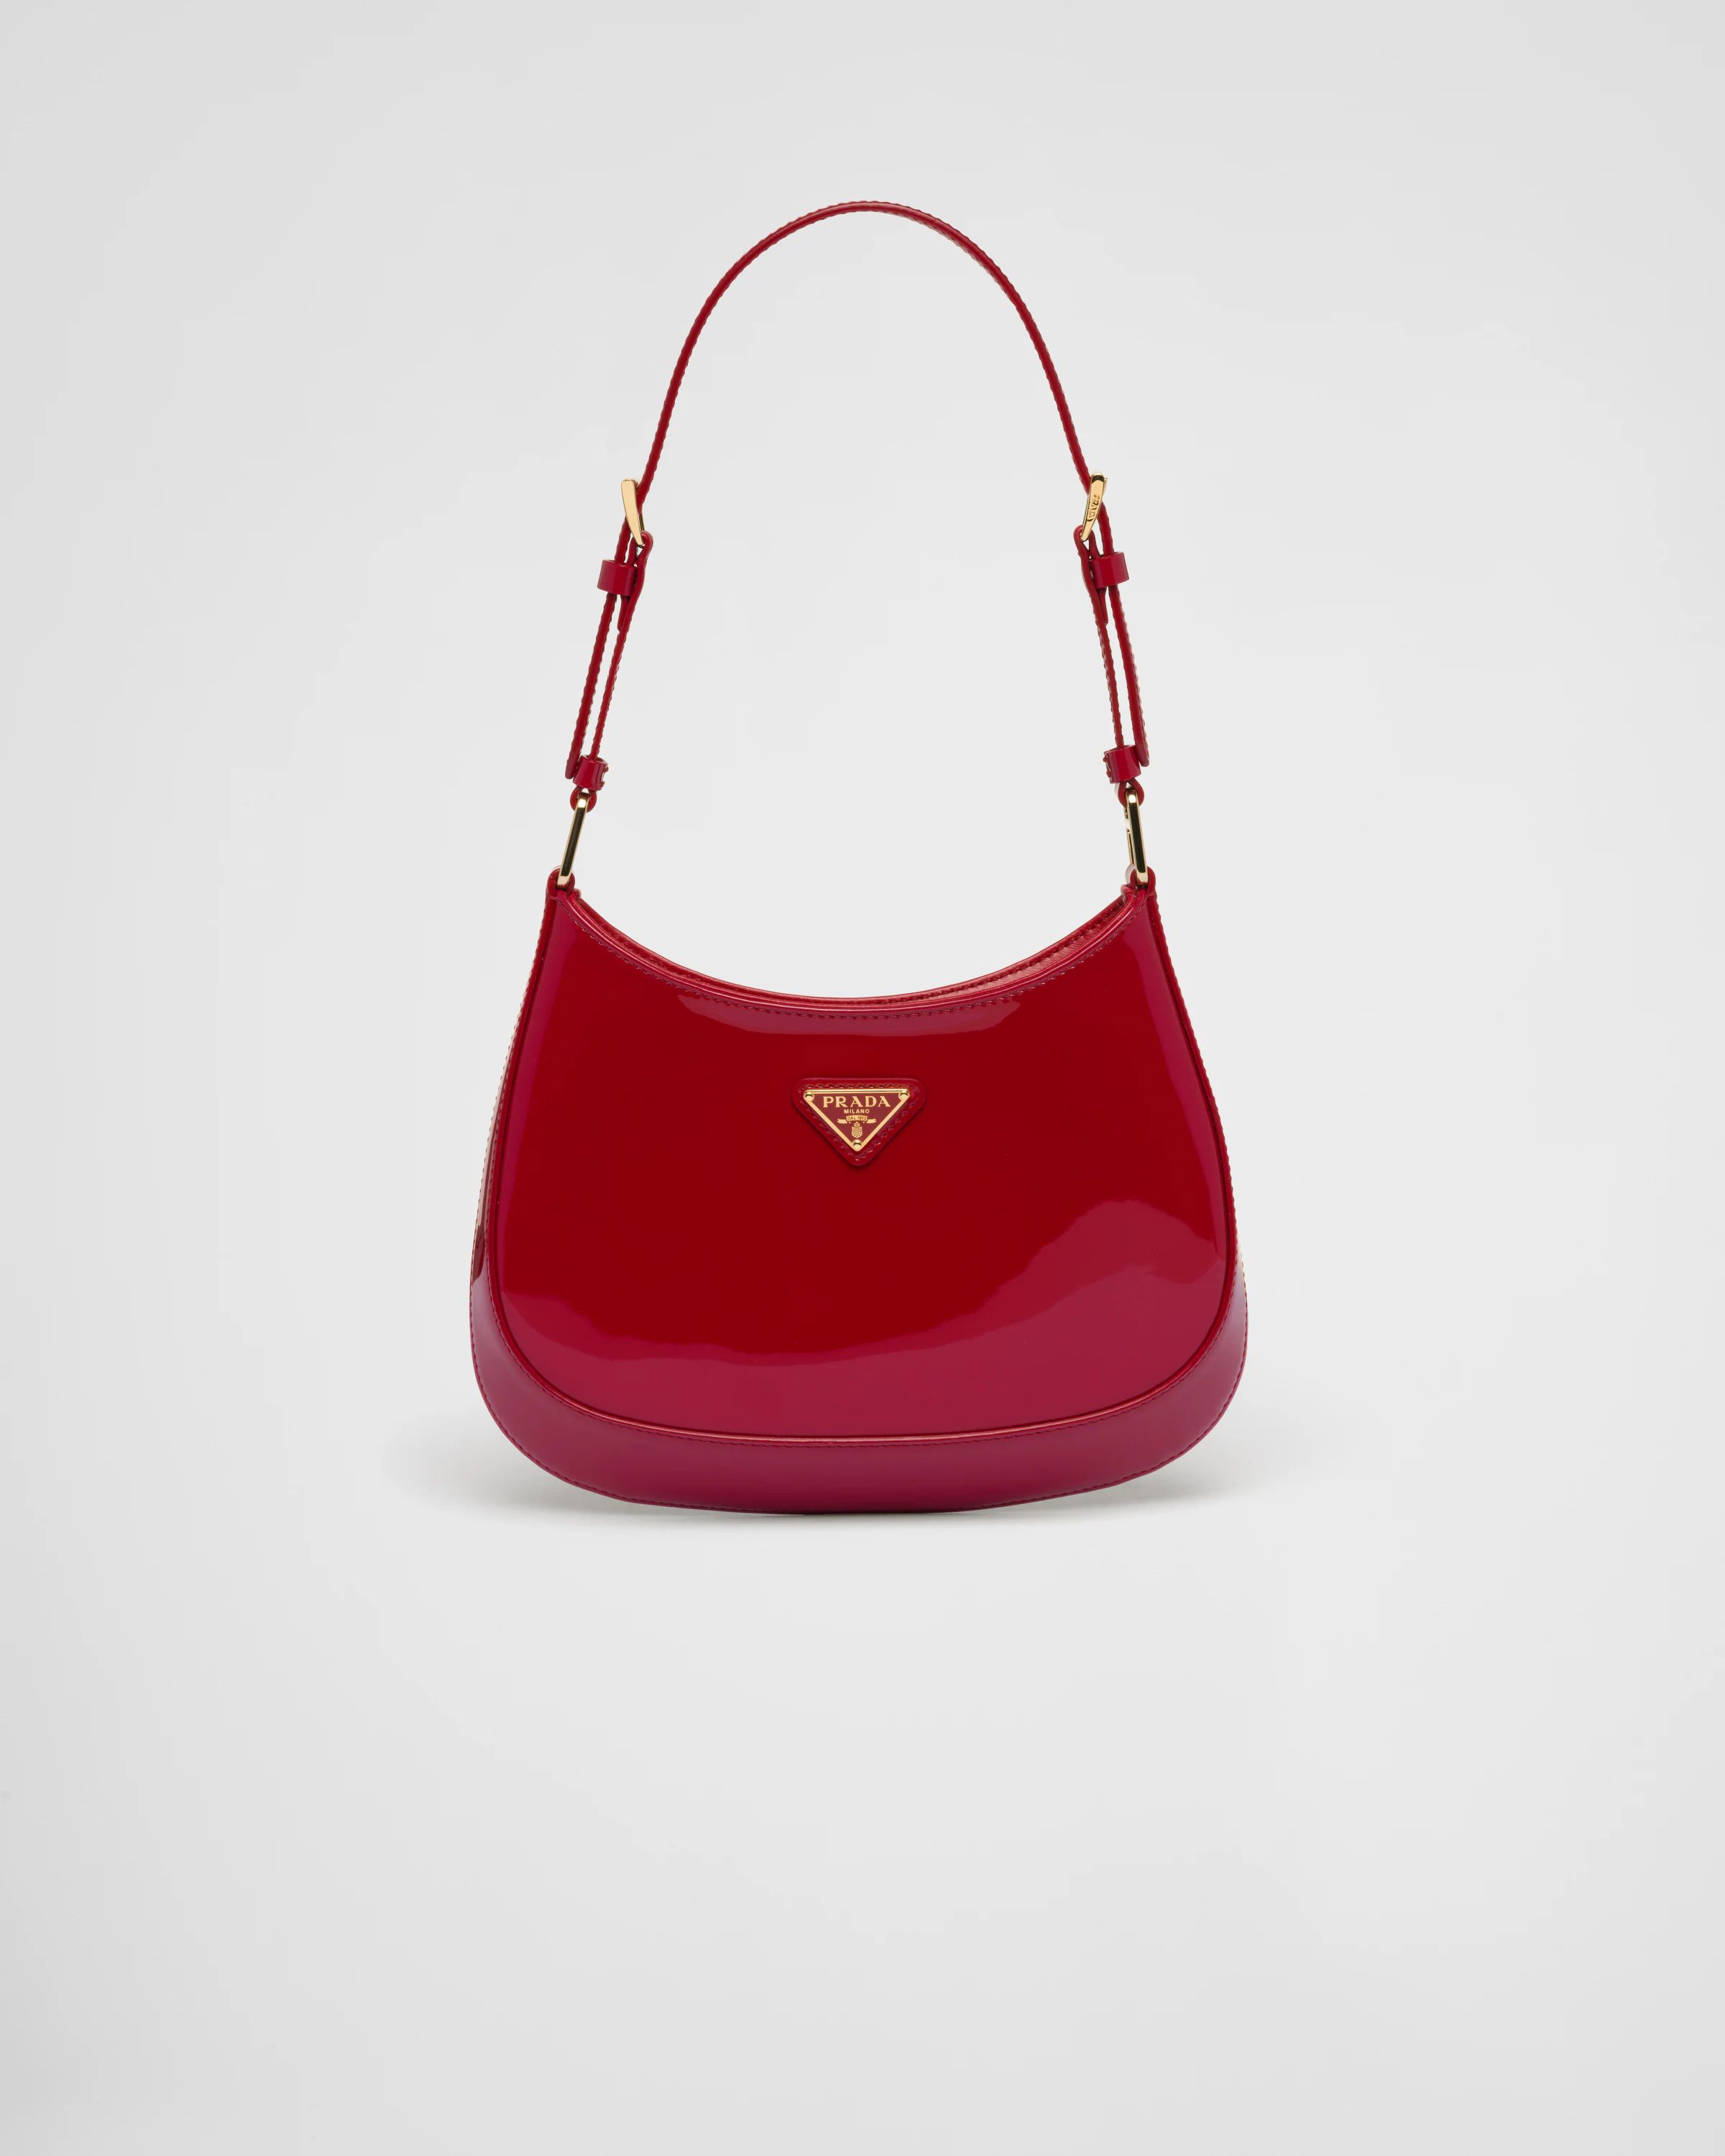 Prada Cleo patent leather bag | Prada Spa US